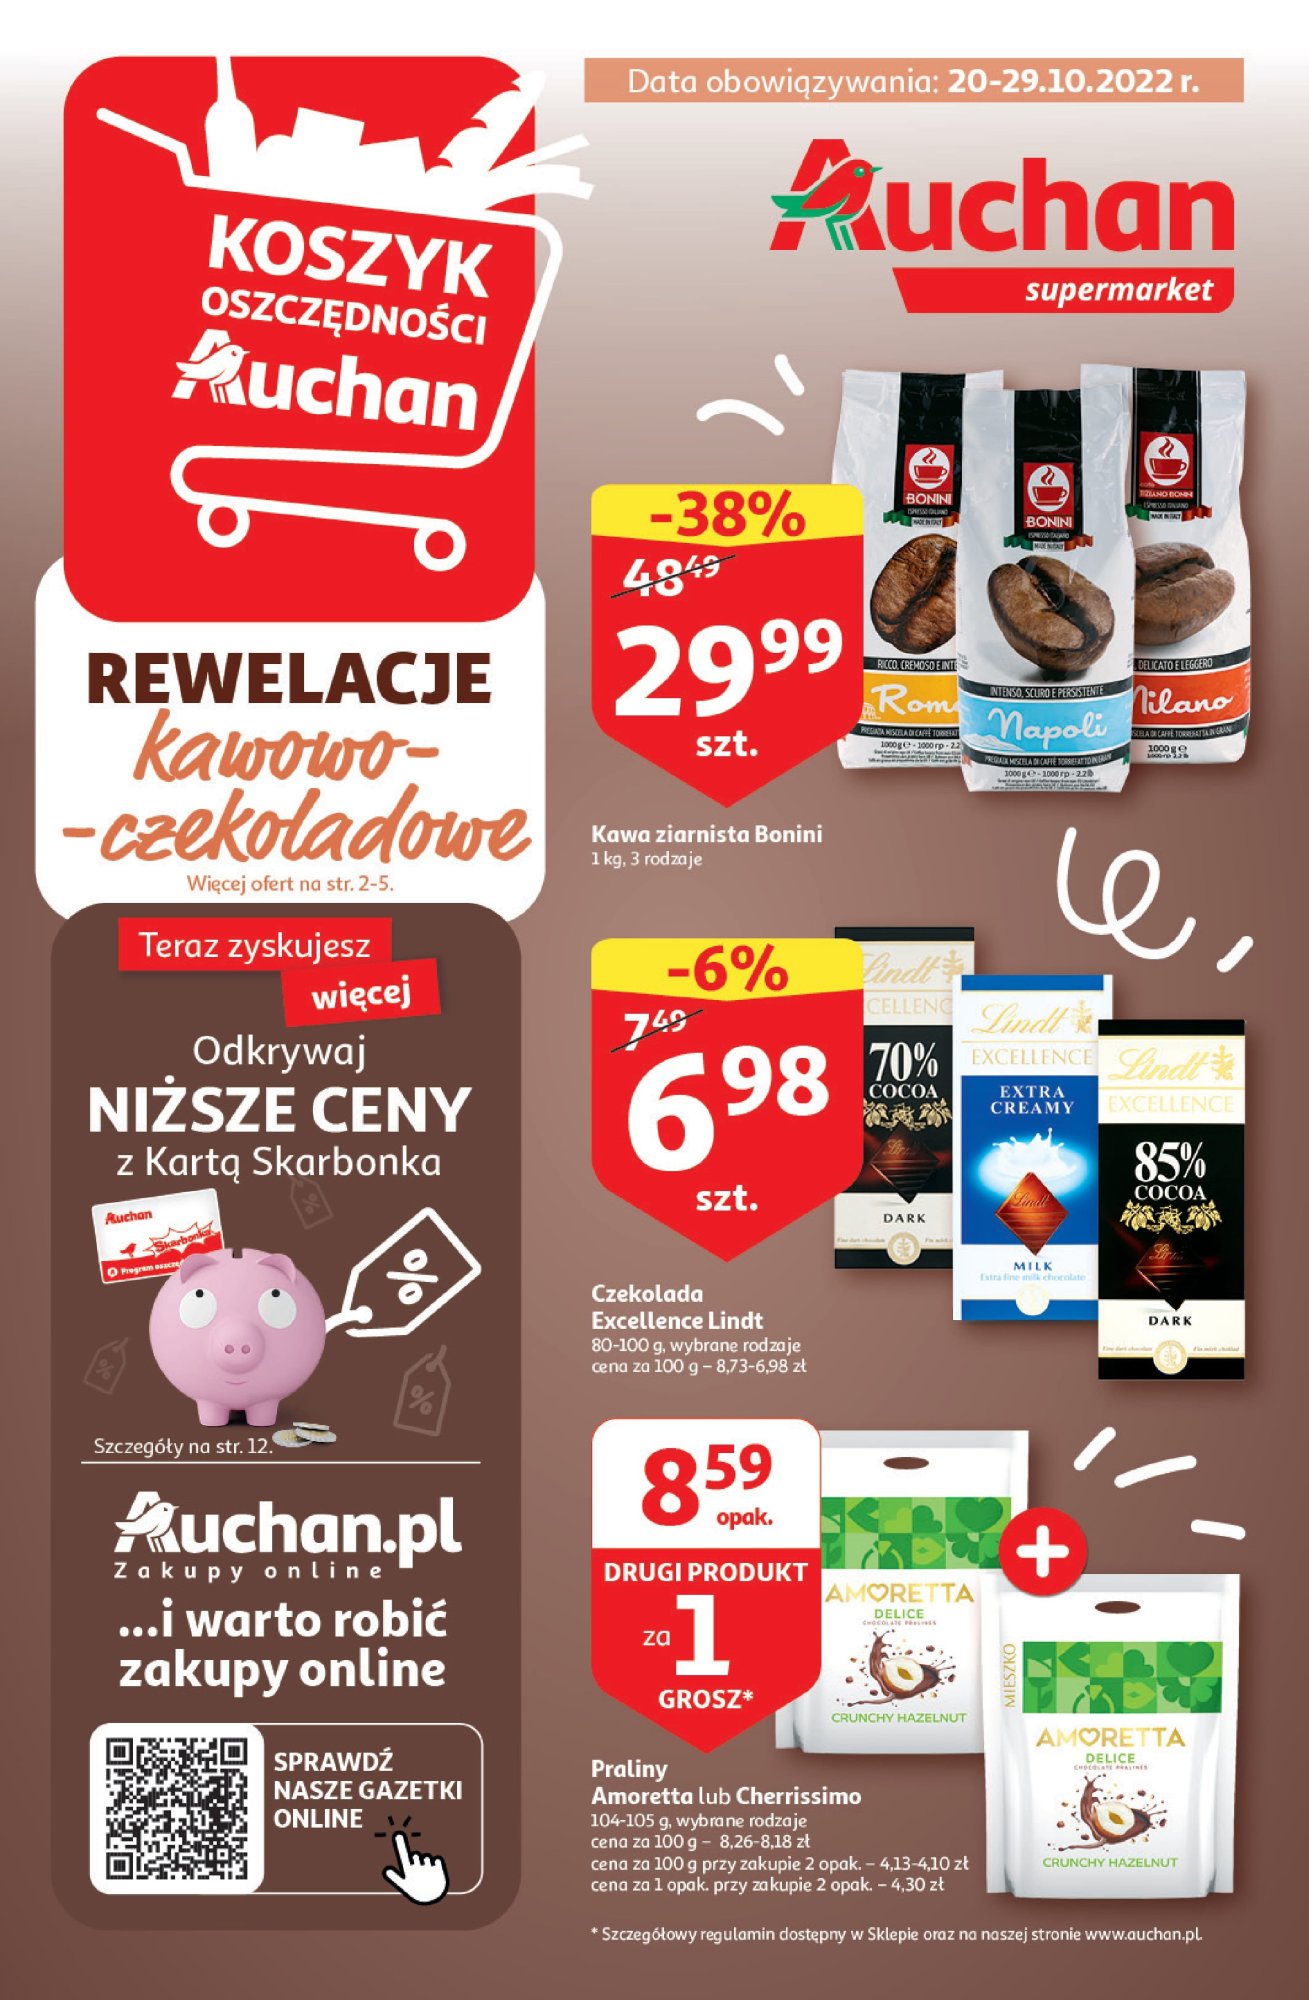 Auchan - Koszyk Oszczędności Supermarkety - 20.10 - październik 